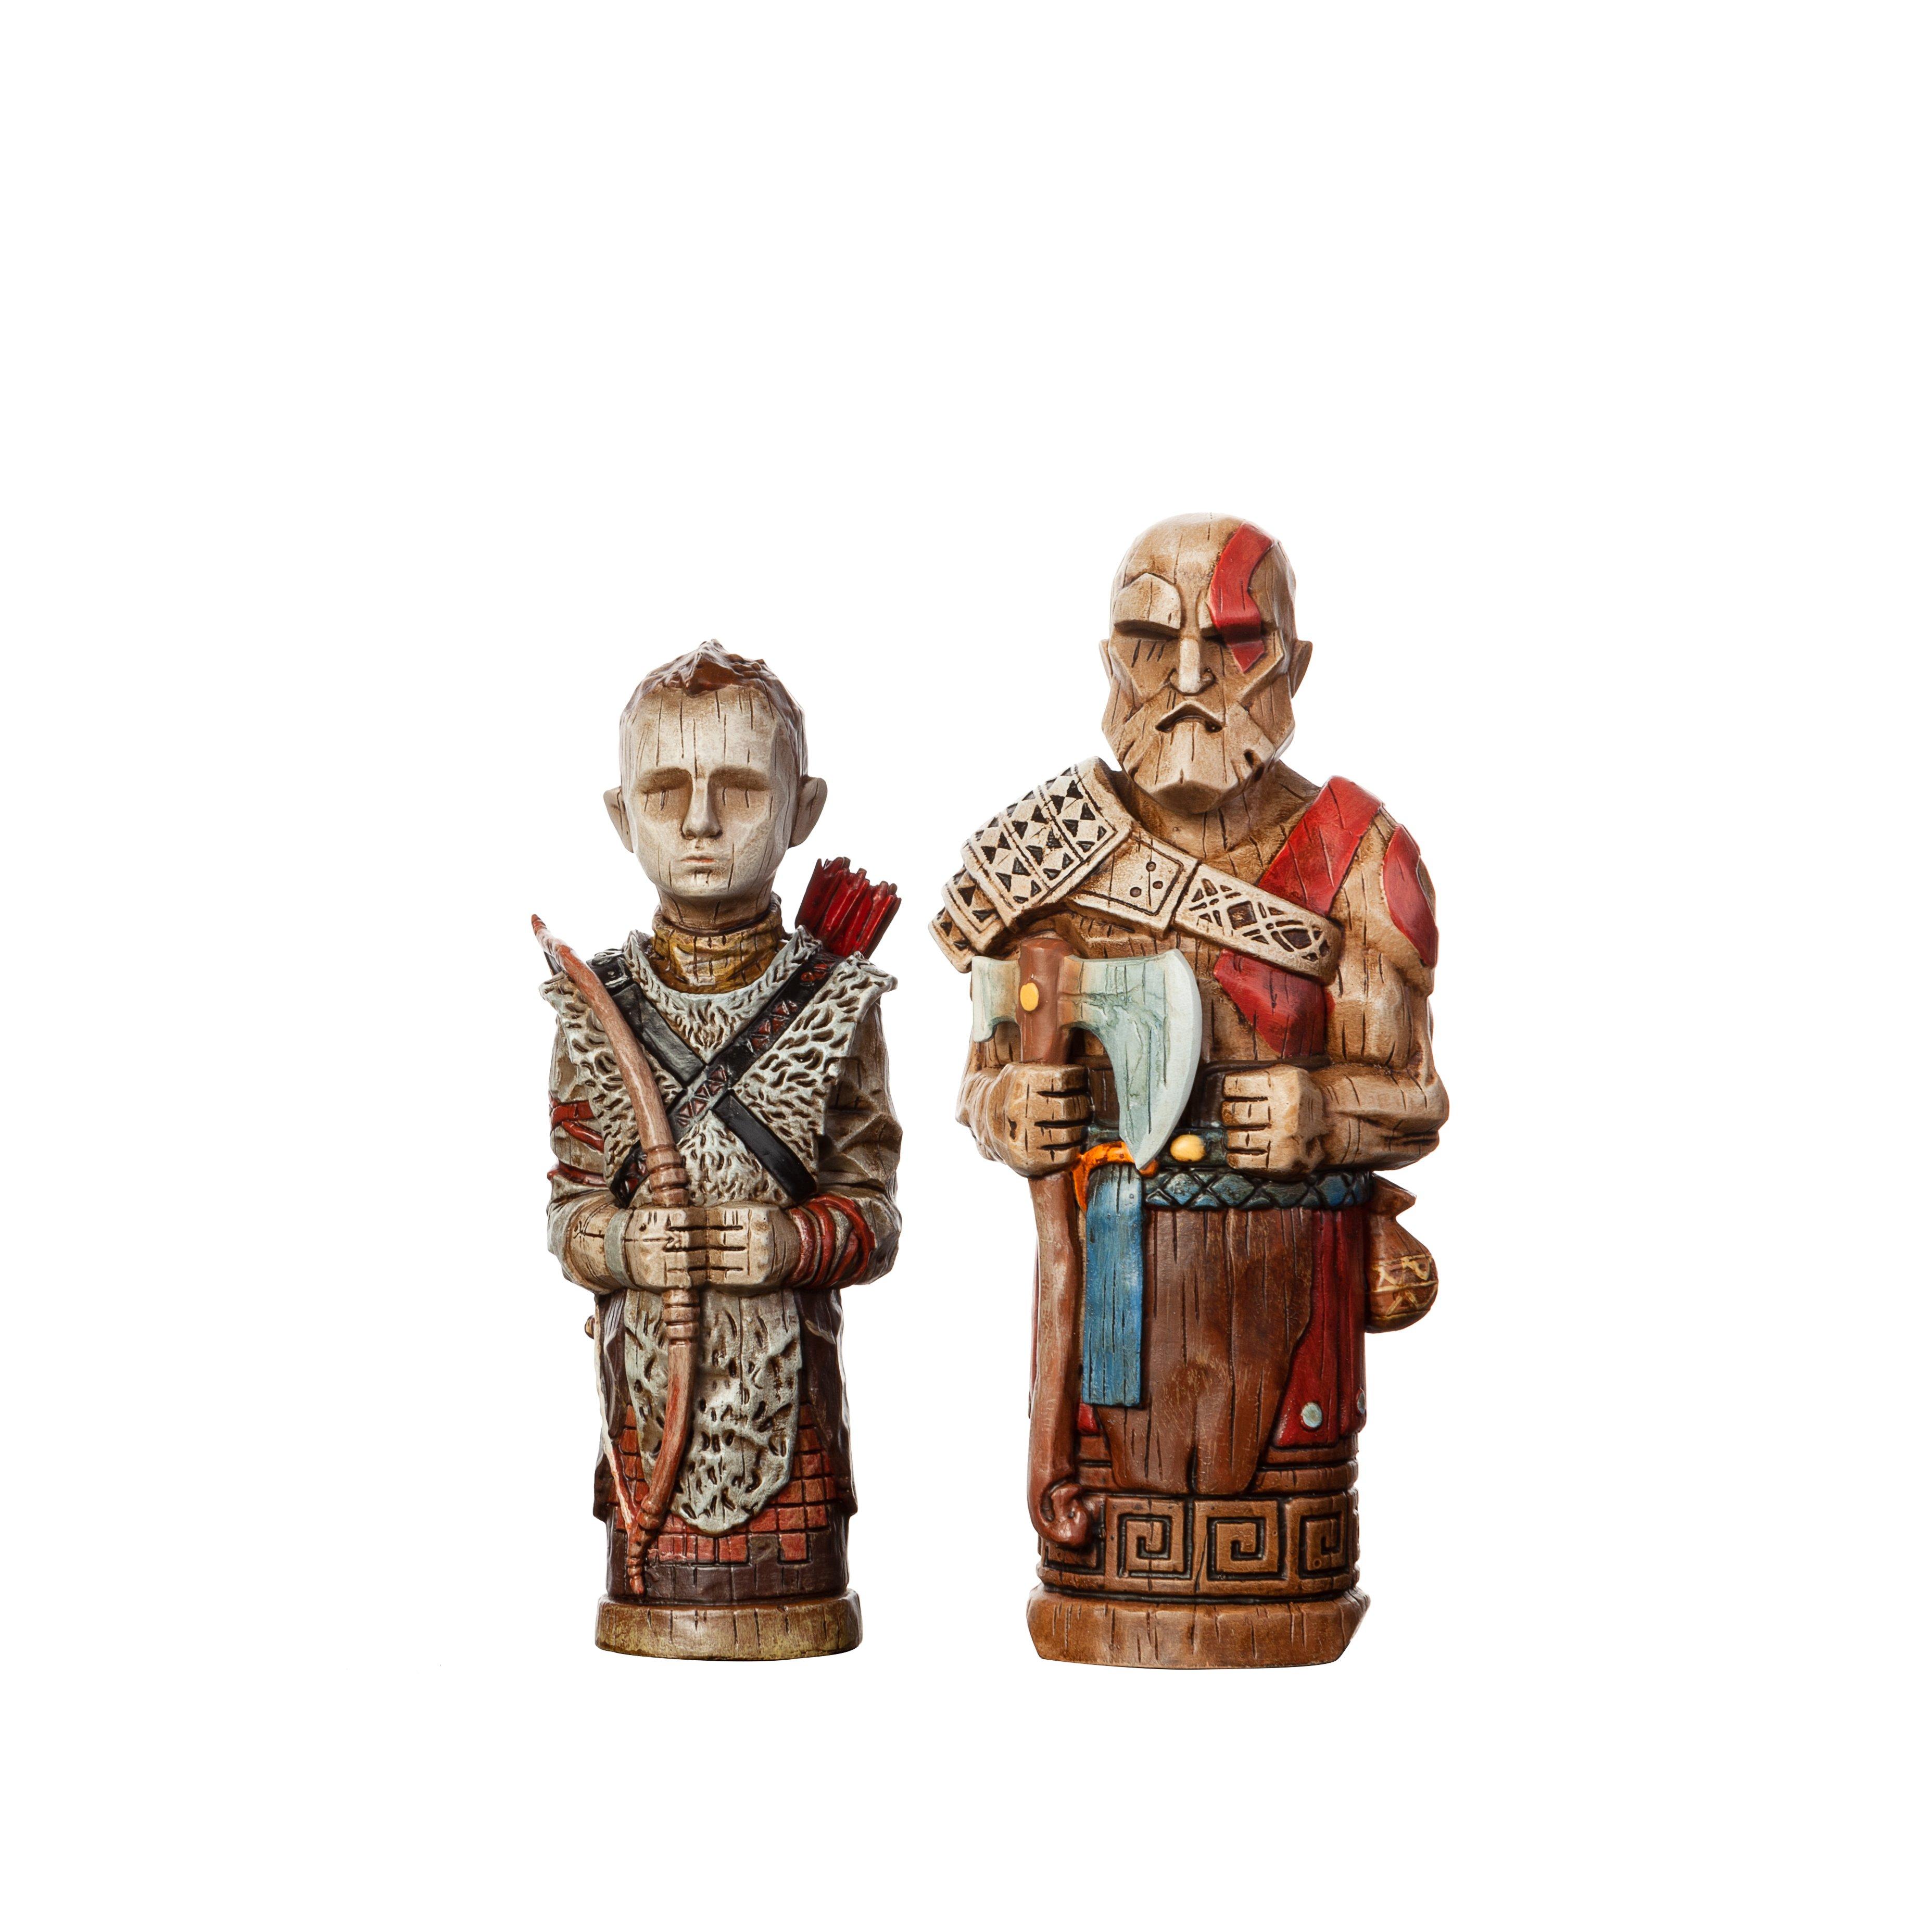 kratos and atreus 2 pack